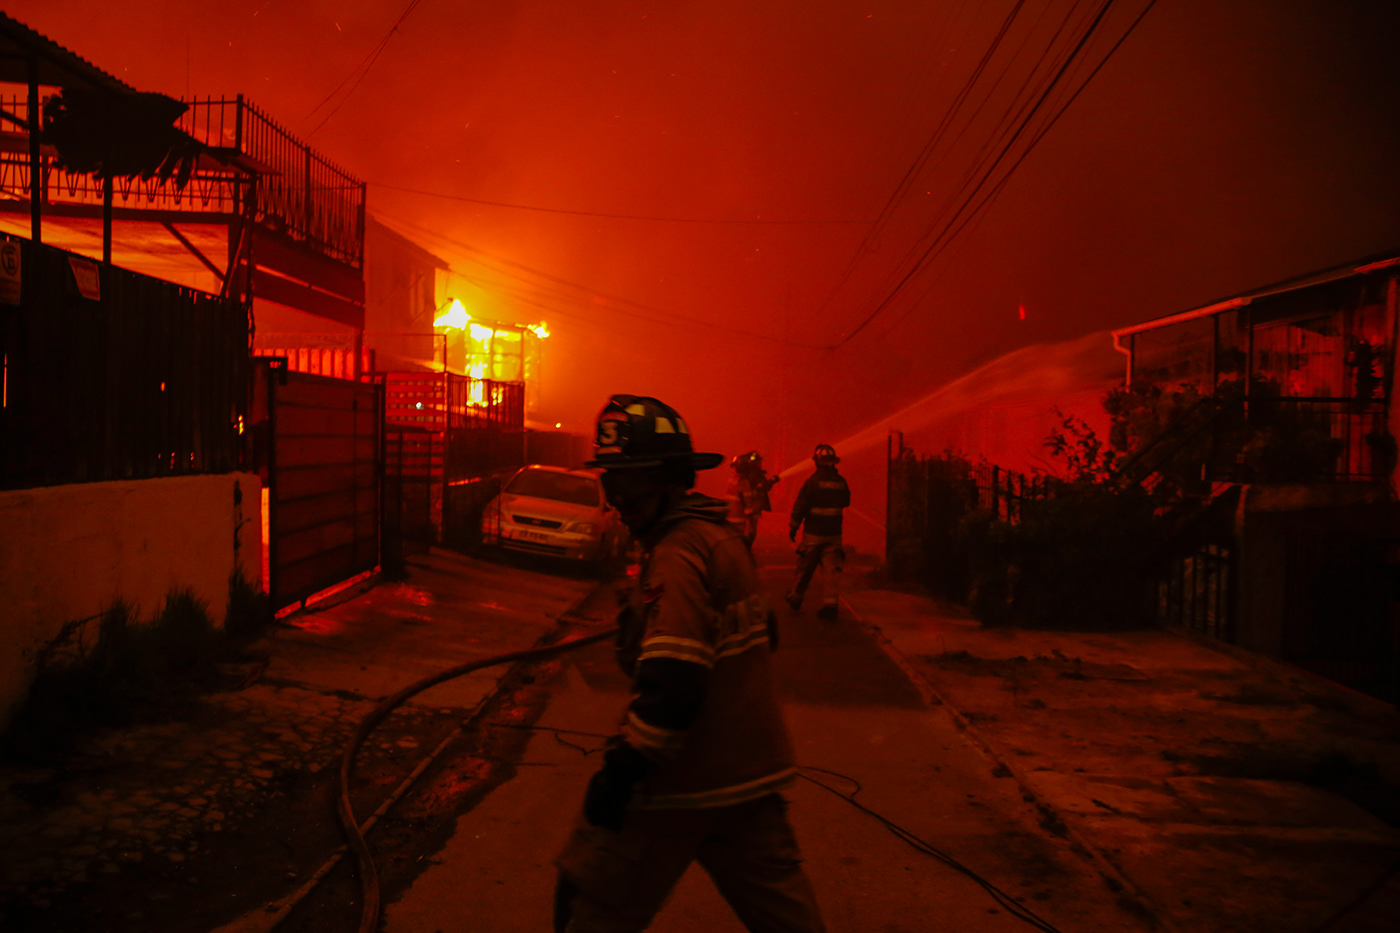 incendio valparaiso chile Fotoperiodismo documental Incendios forestales fuego Catastrofe desastres viña del mar